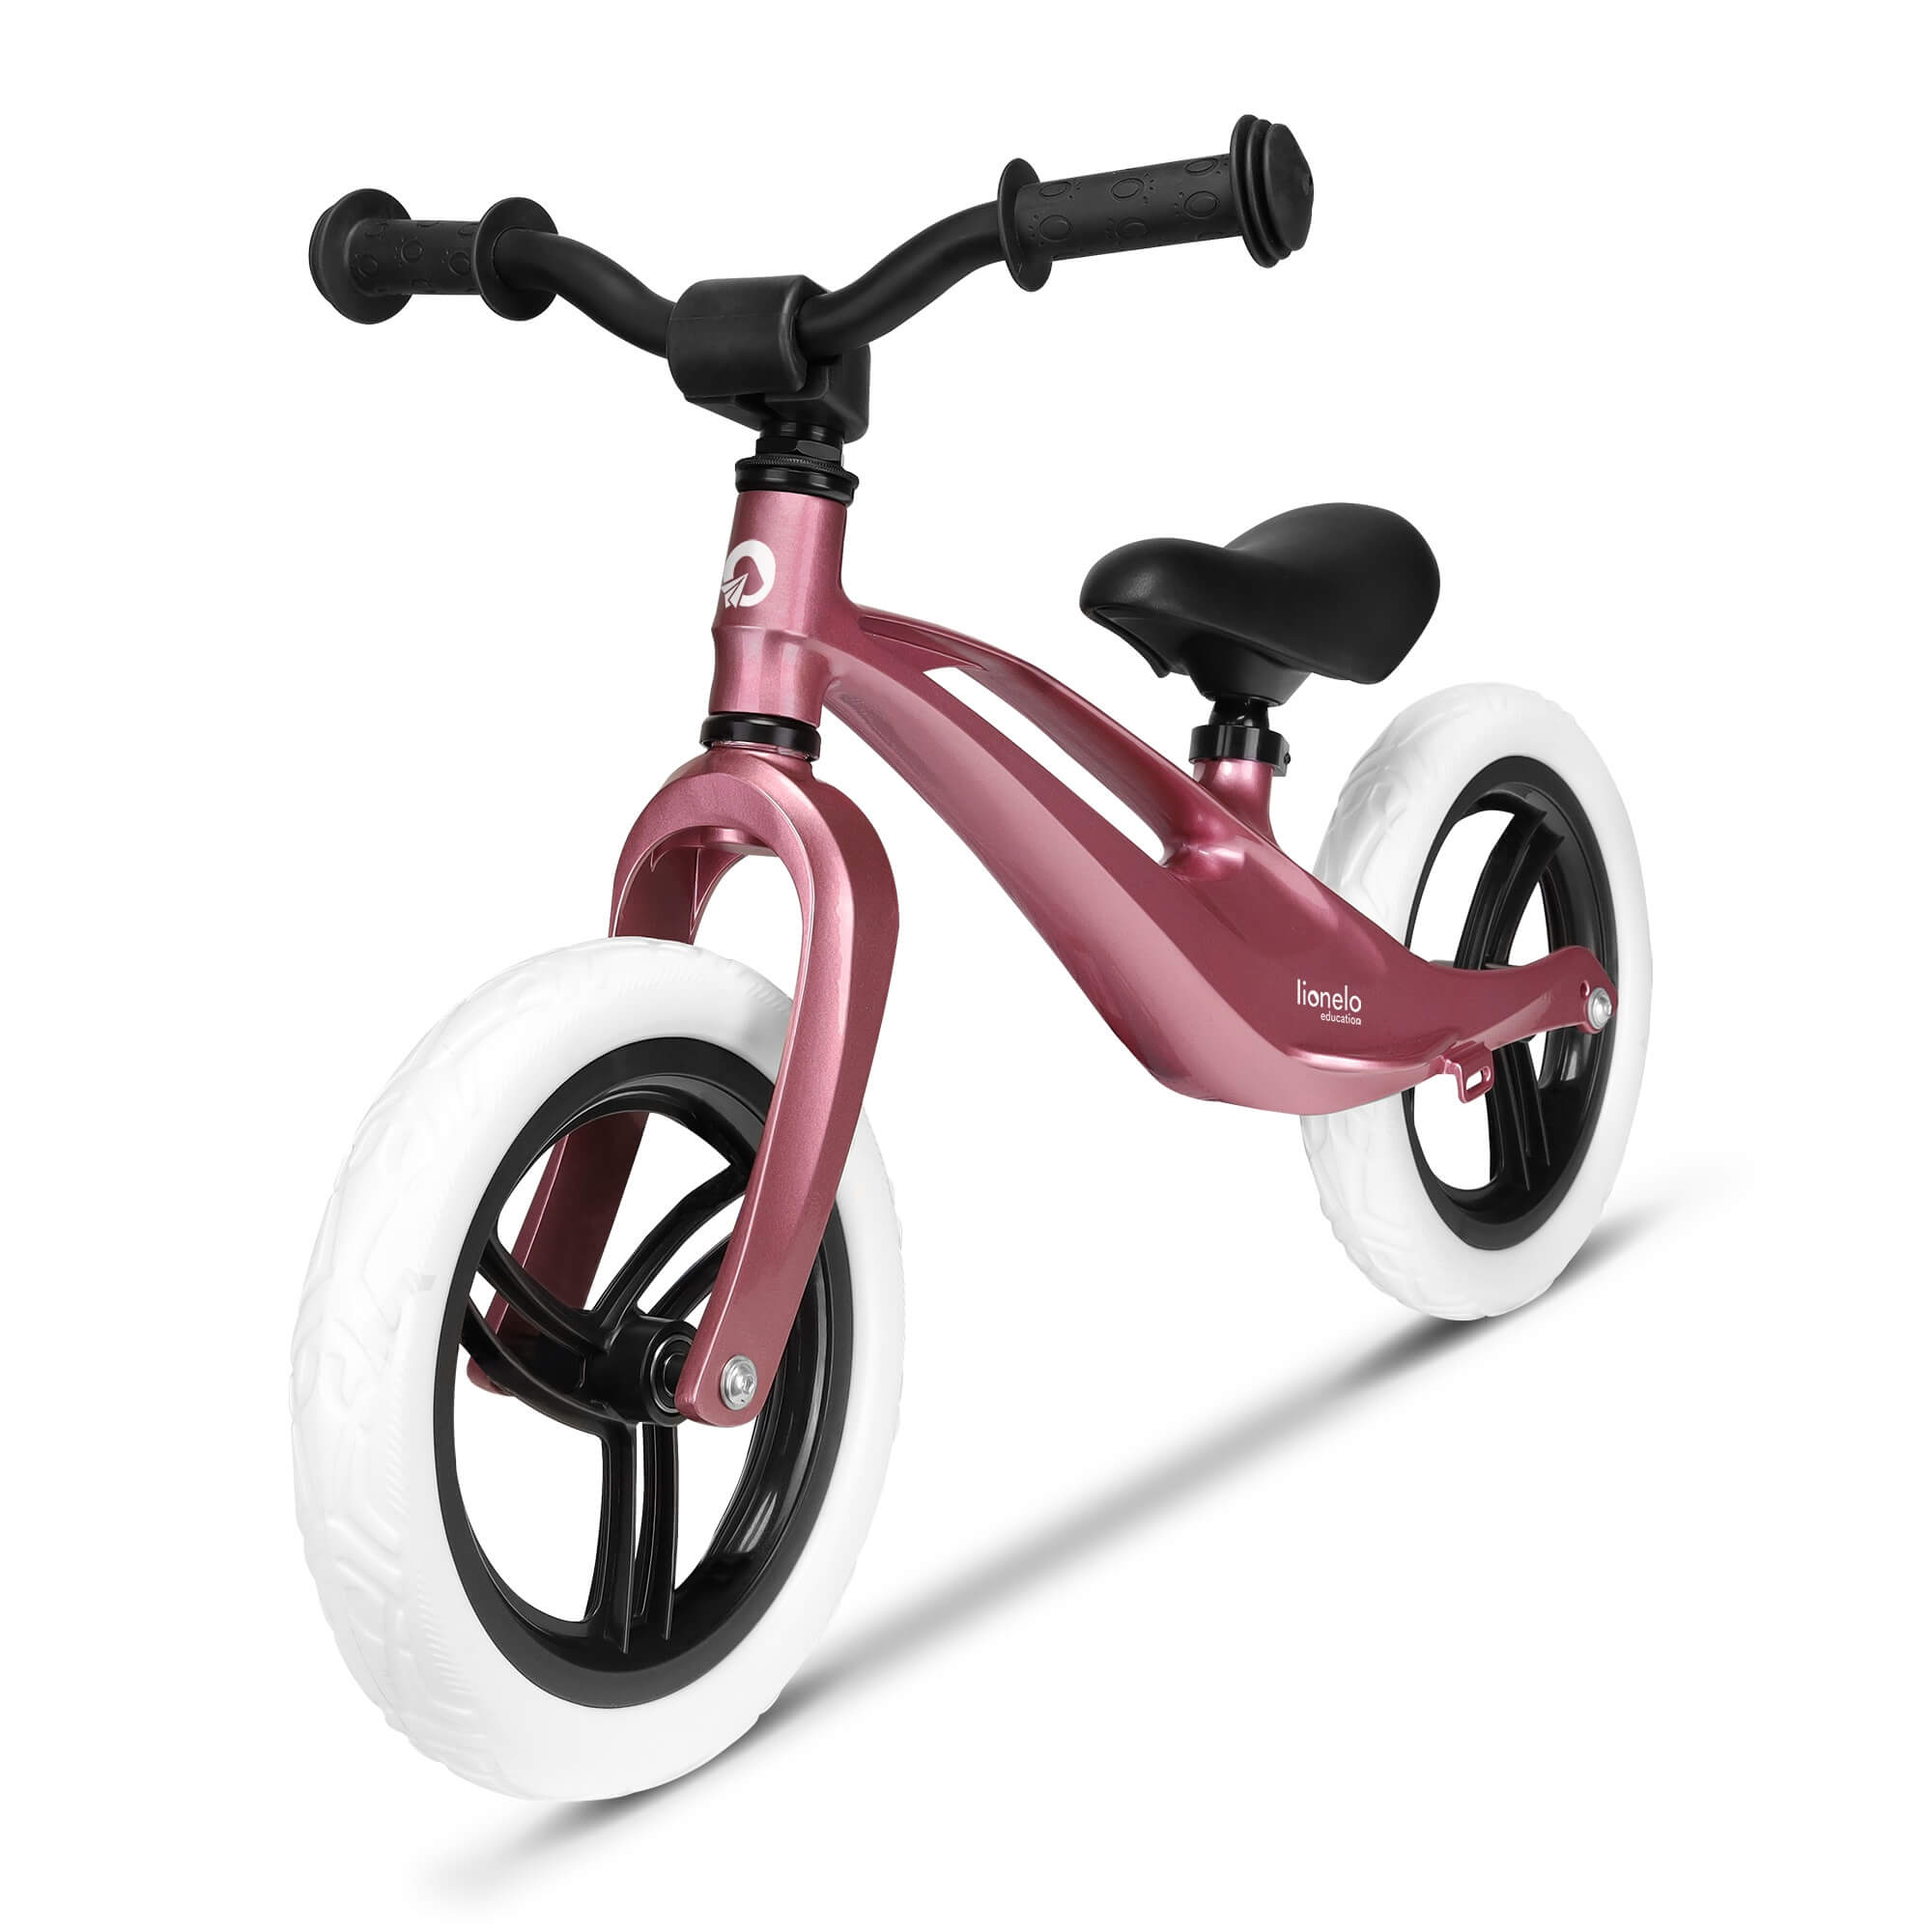 Kinderfahrrad Lionelo Kinder-Laufrad Rosa Pink für Mädchen bis 27 kg super 